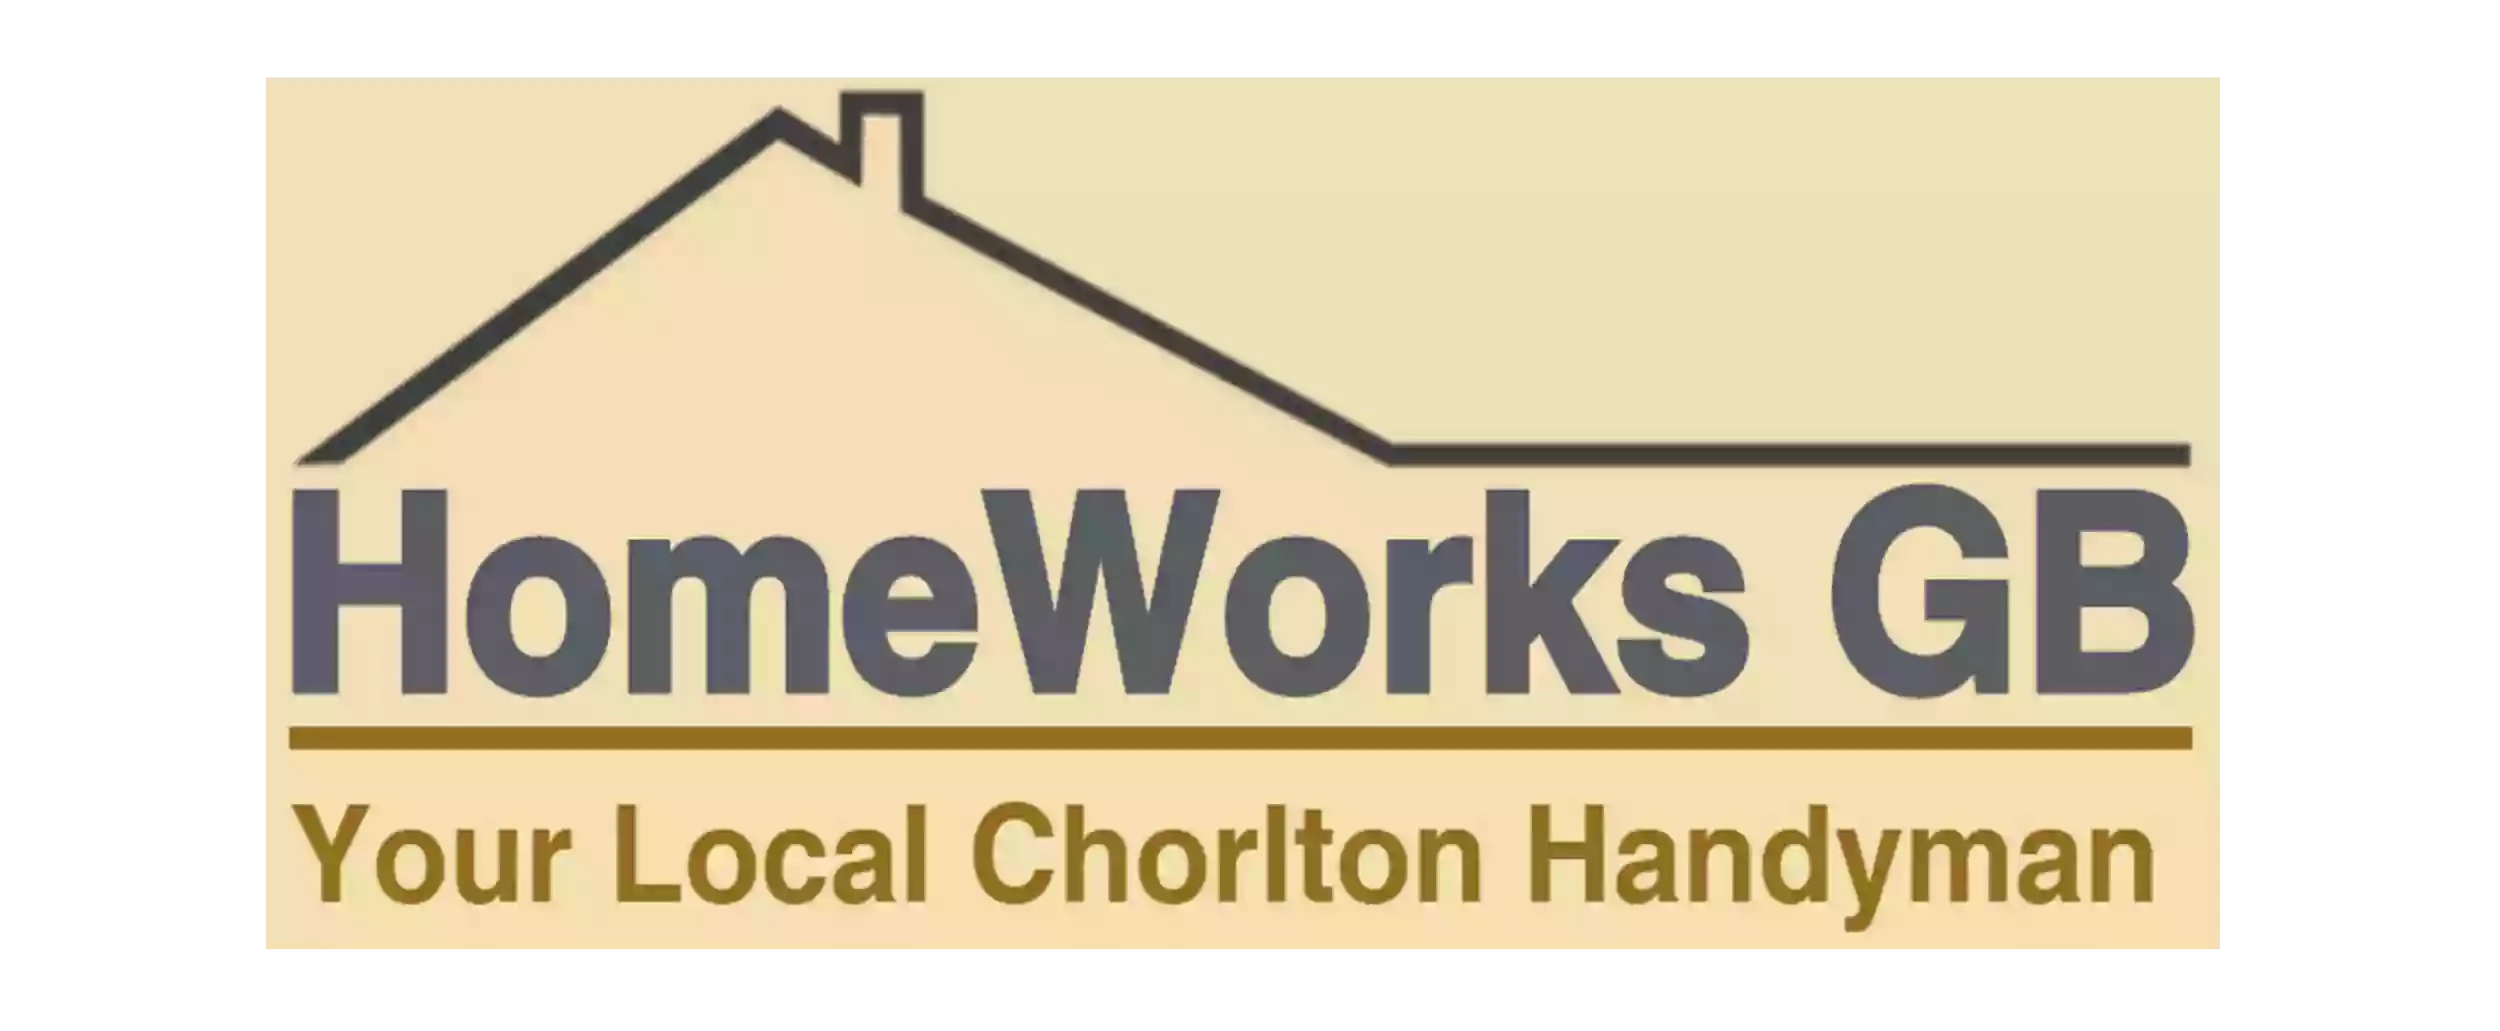 HomeWorks GB Handyman